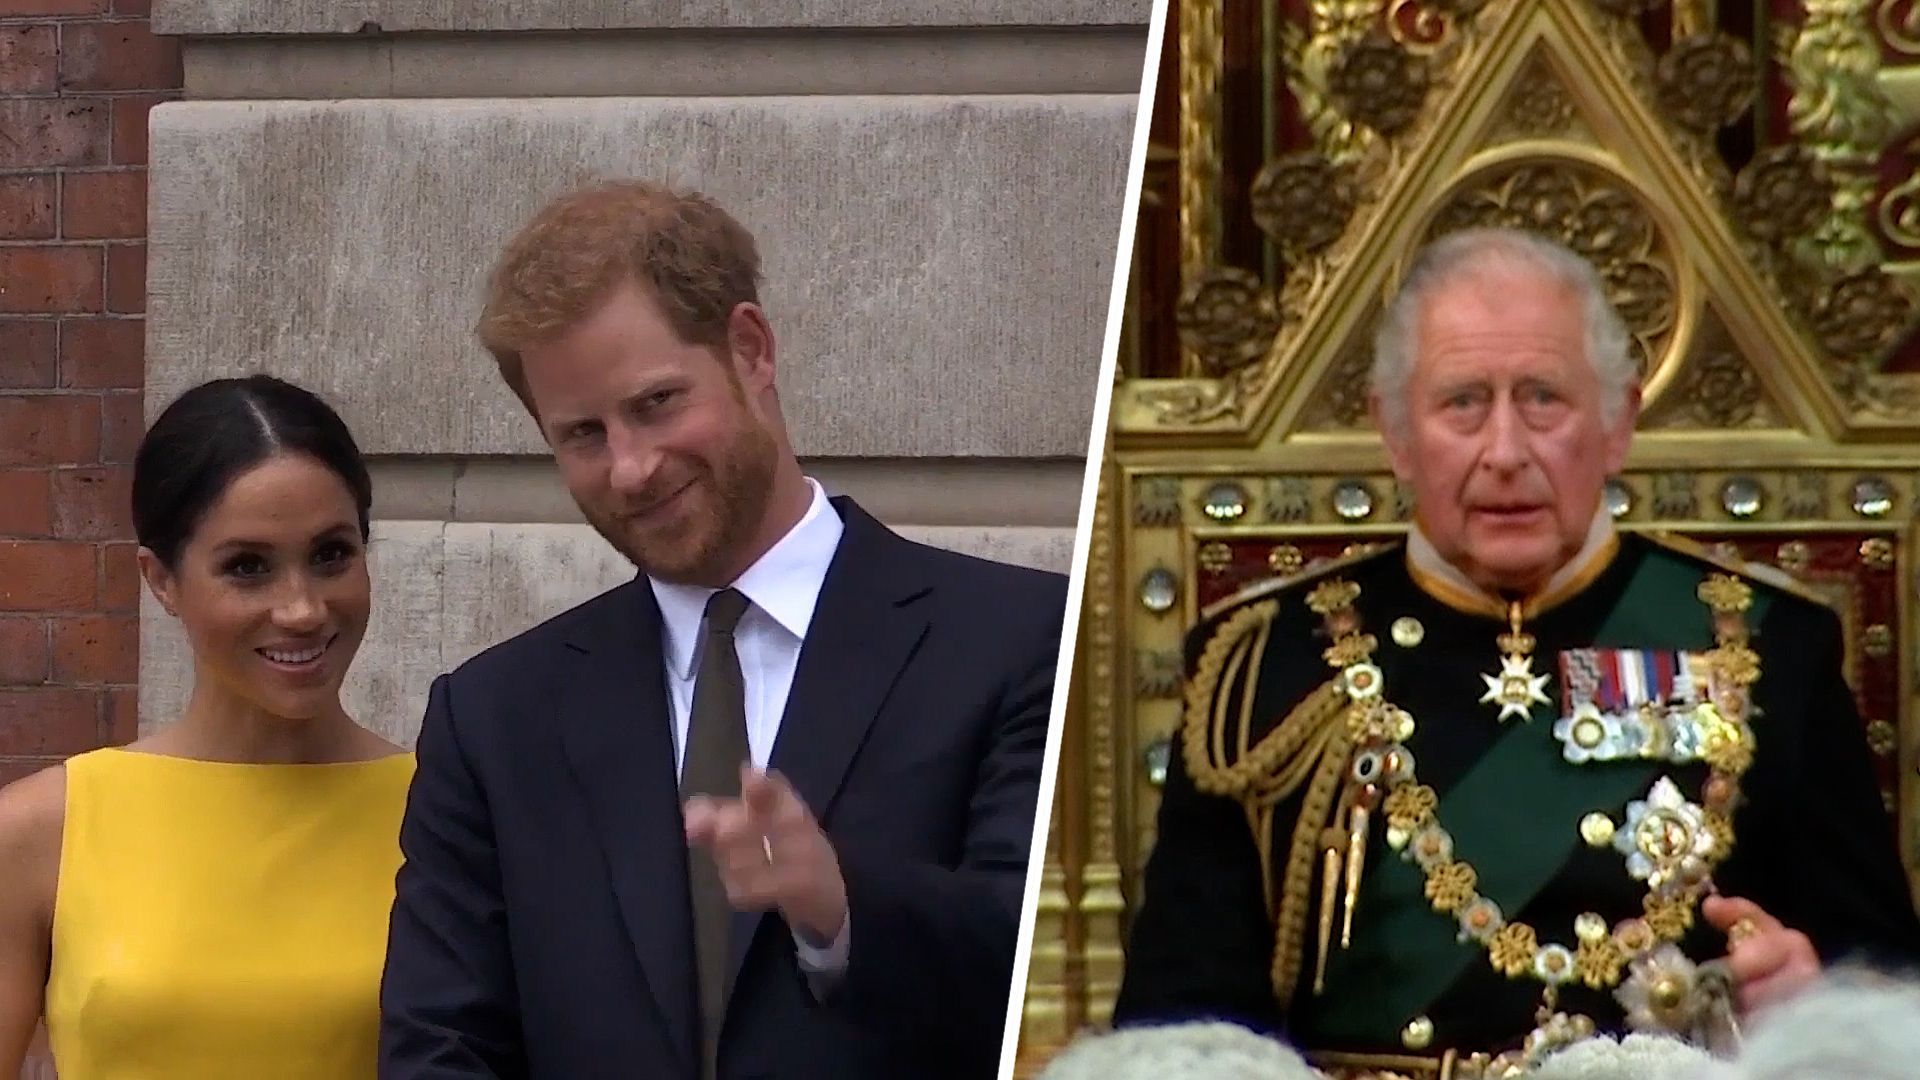 Krönung von König Charles III.: Prinz Harry und Meghan sollen Forderungen stellen